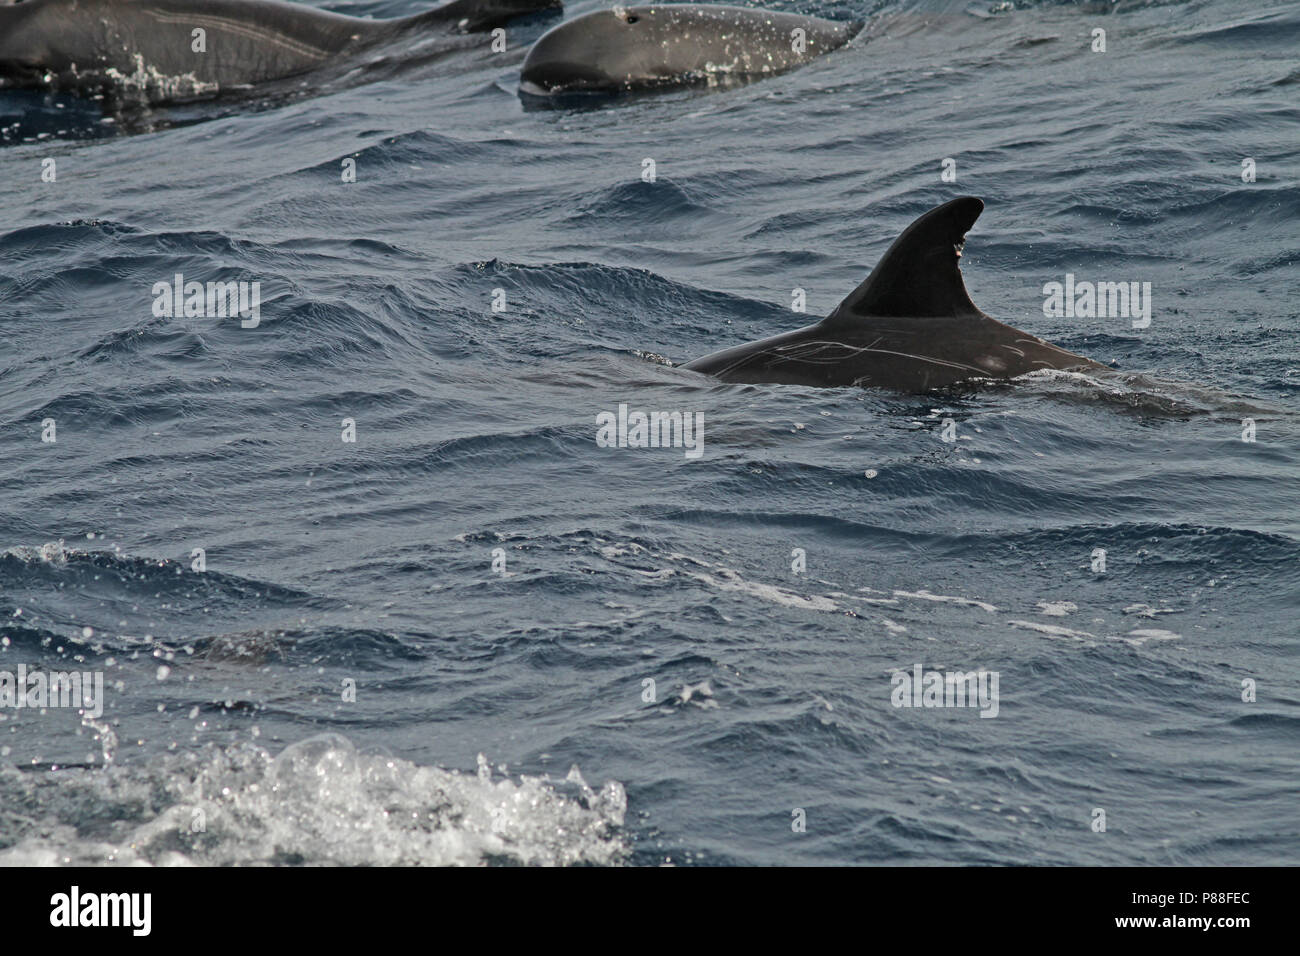 L'Orque pygmée (Feresa attenuata) un mal connue et rarement vu des dauphins océaniques. Banque D'Images